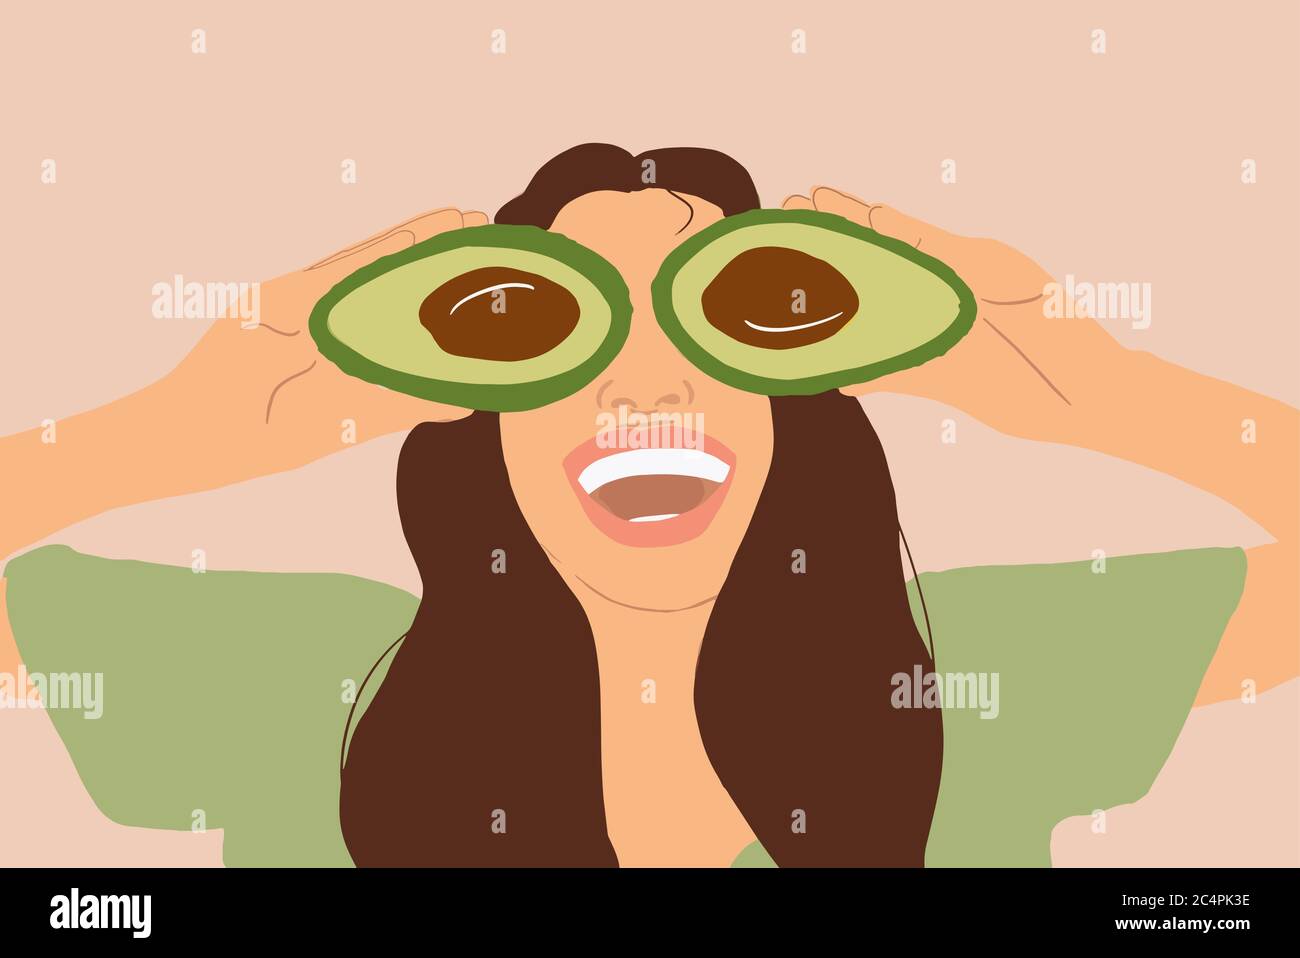 Illustrazione di una giovane donna sorridente che nasconde gli occhi con avocado affettato su sfondo giallo. Concetto di vegetarianismo, alimentazione sana, cura della pelle e benessere Illustrazione Vettoriale